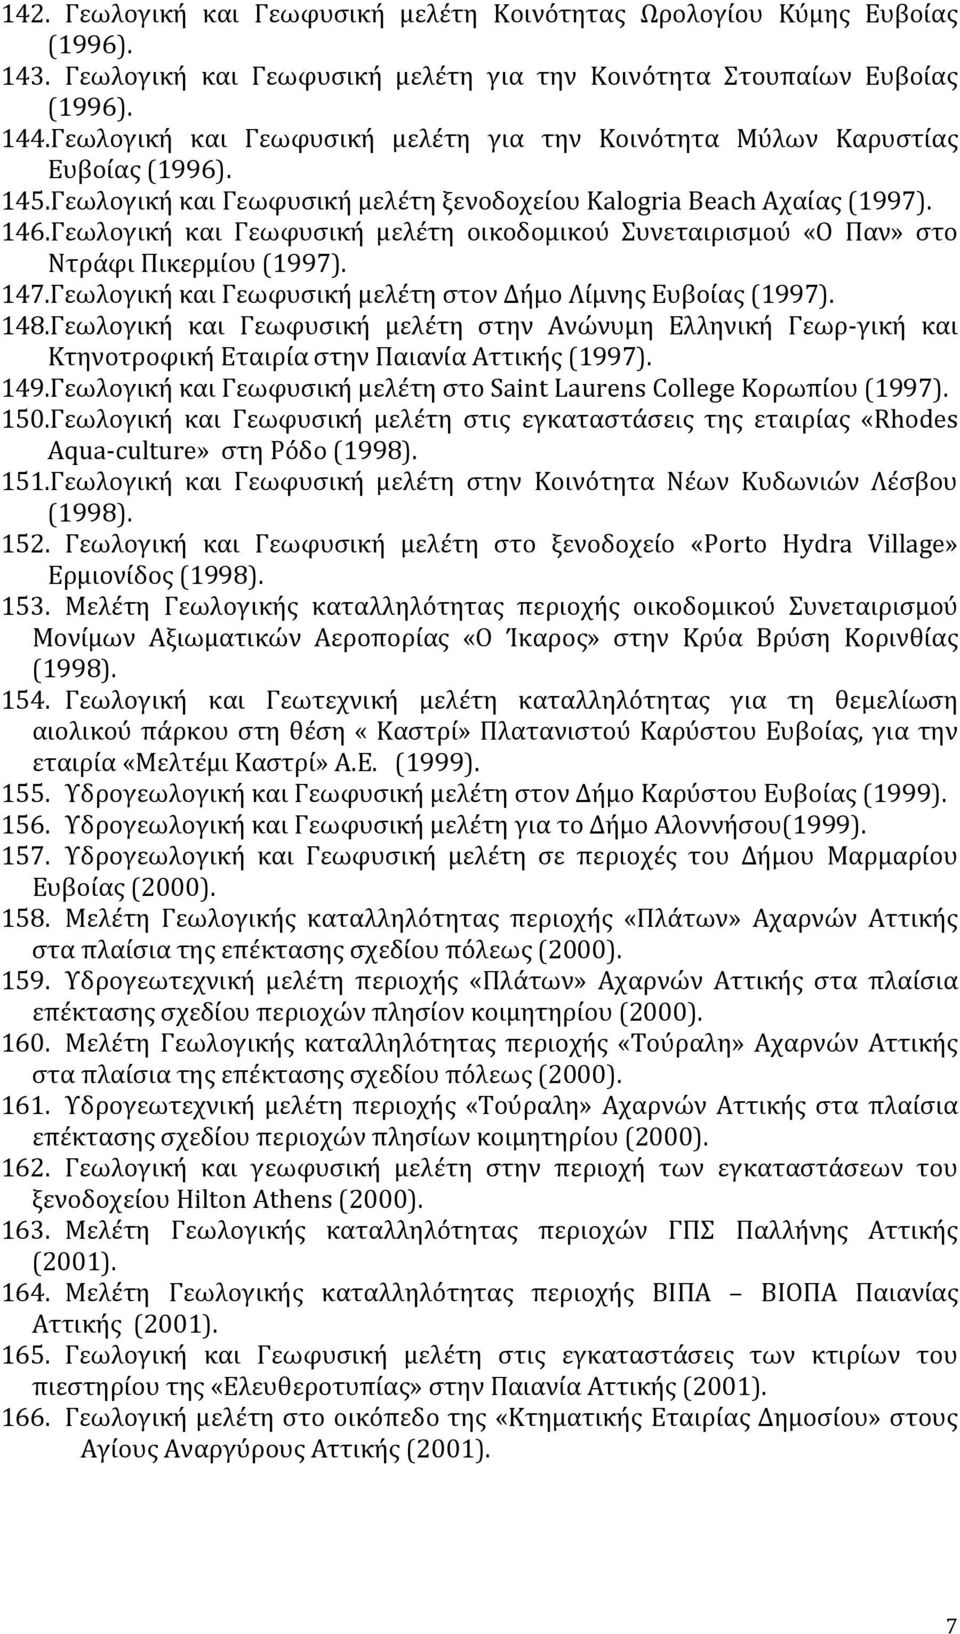 Γεωλογική και Γεωφυσική μελέτη οικοδομικού Συνεταιρισμού «O Παν» στο Ντράφι Πικερμίου (1997). 147.Γεωλογική και Γεωφυσική μελέτη στον Δήμο Λίμνης Ευβοίας (1997). 148.